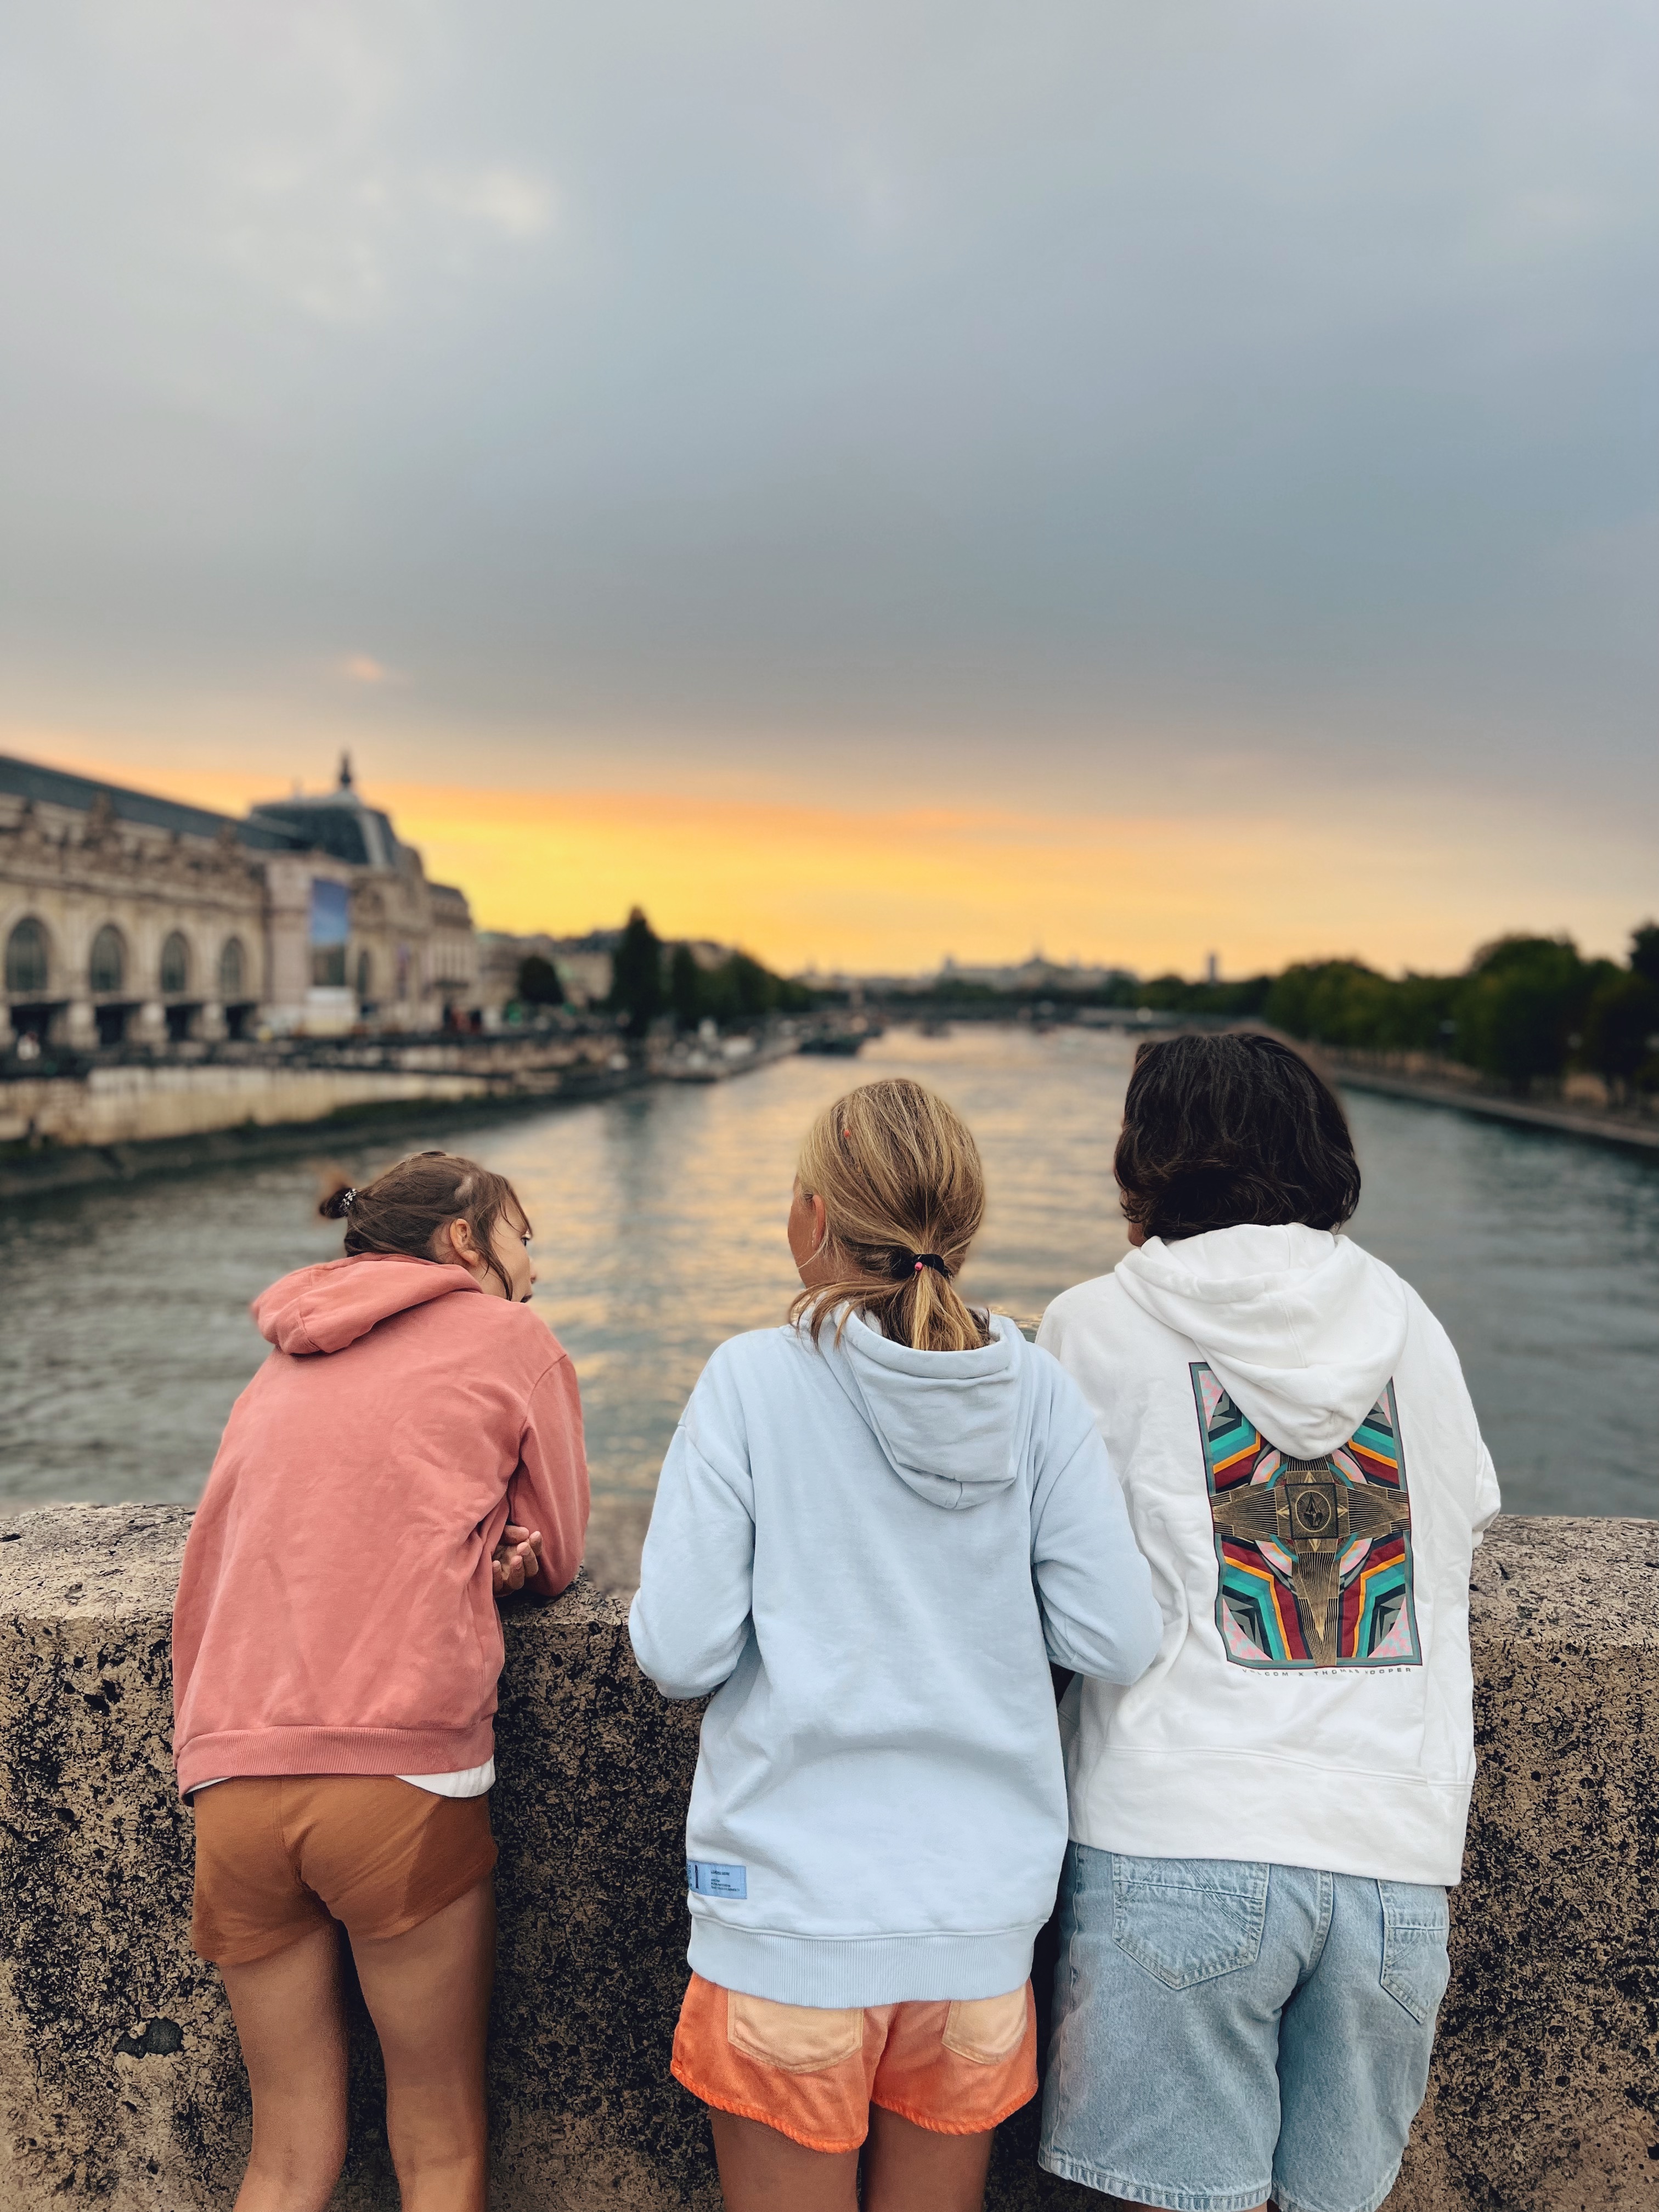 De meisjes kijken uit over de Seine met zonsondergang